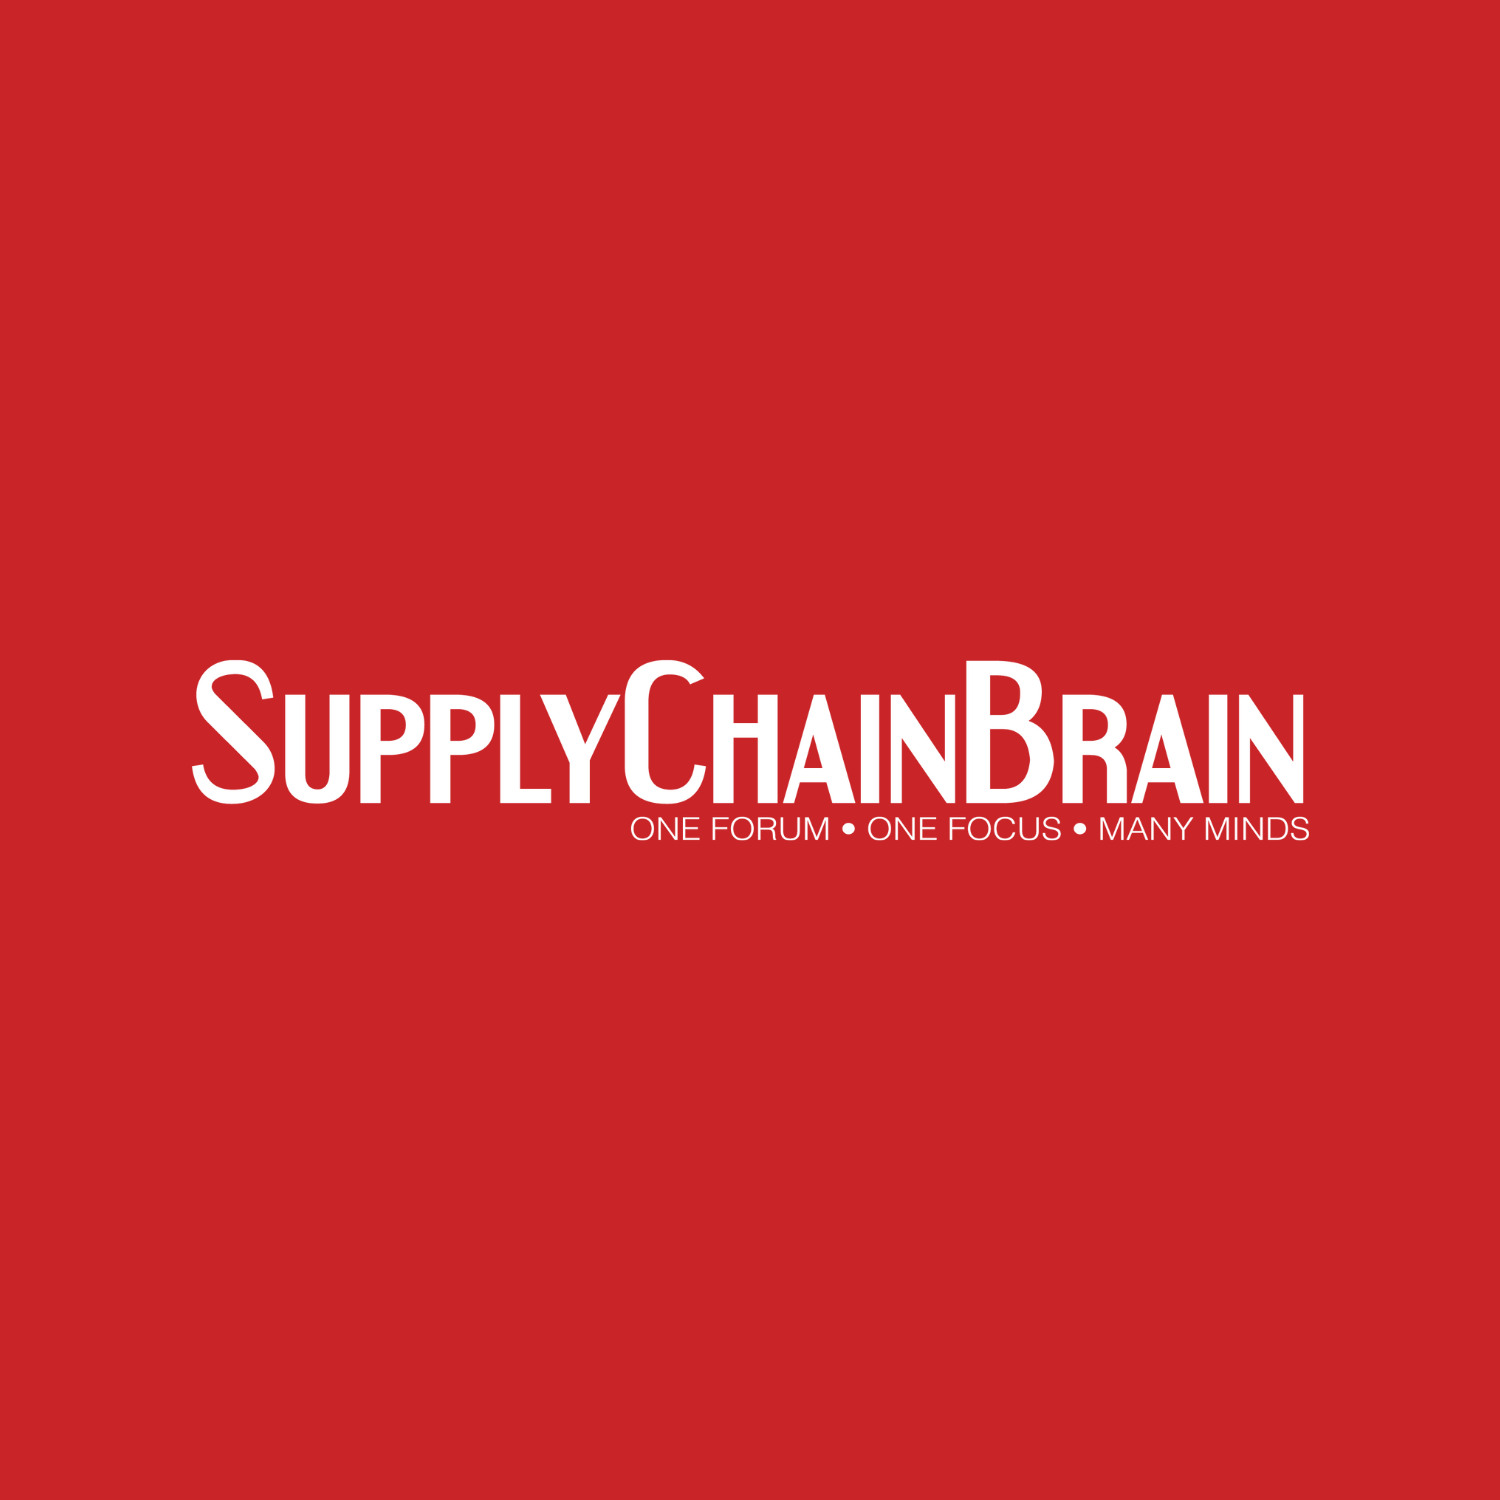 SupplyChainBrain